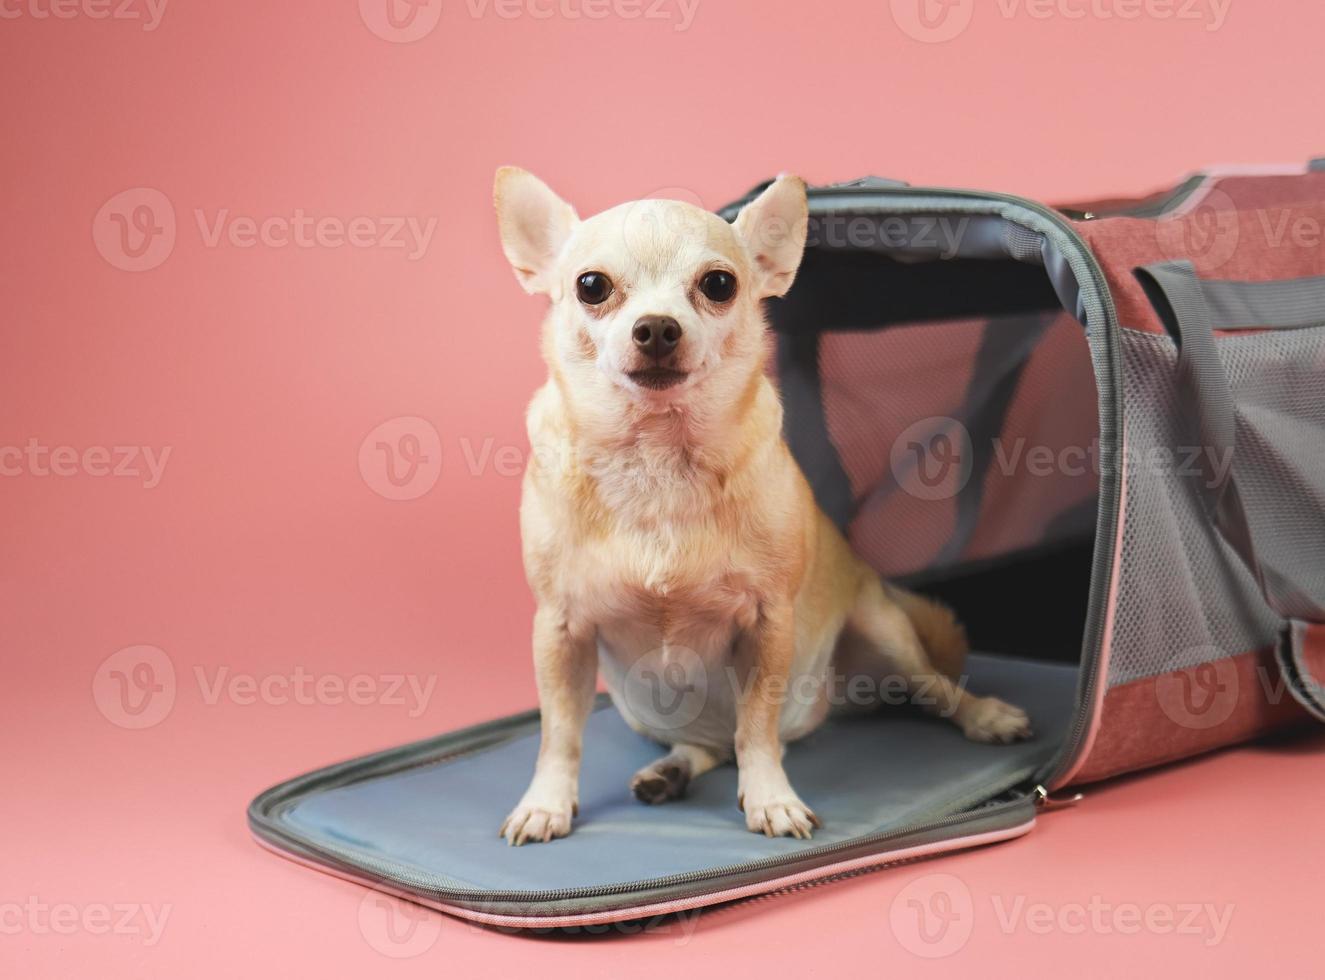 chien chihuahua brun assis et regardant la caméra devant le sac de transport pour animaux de compagnie du voyageur sur fond rose avec espace de copie. voyager en toute sécurité avec des animaux. photo